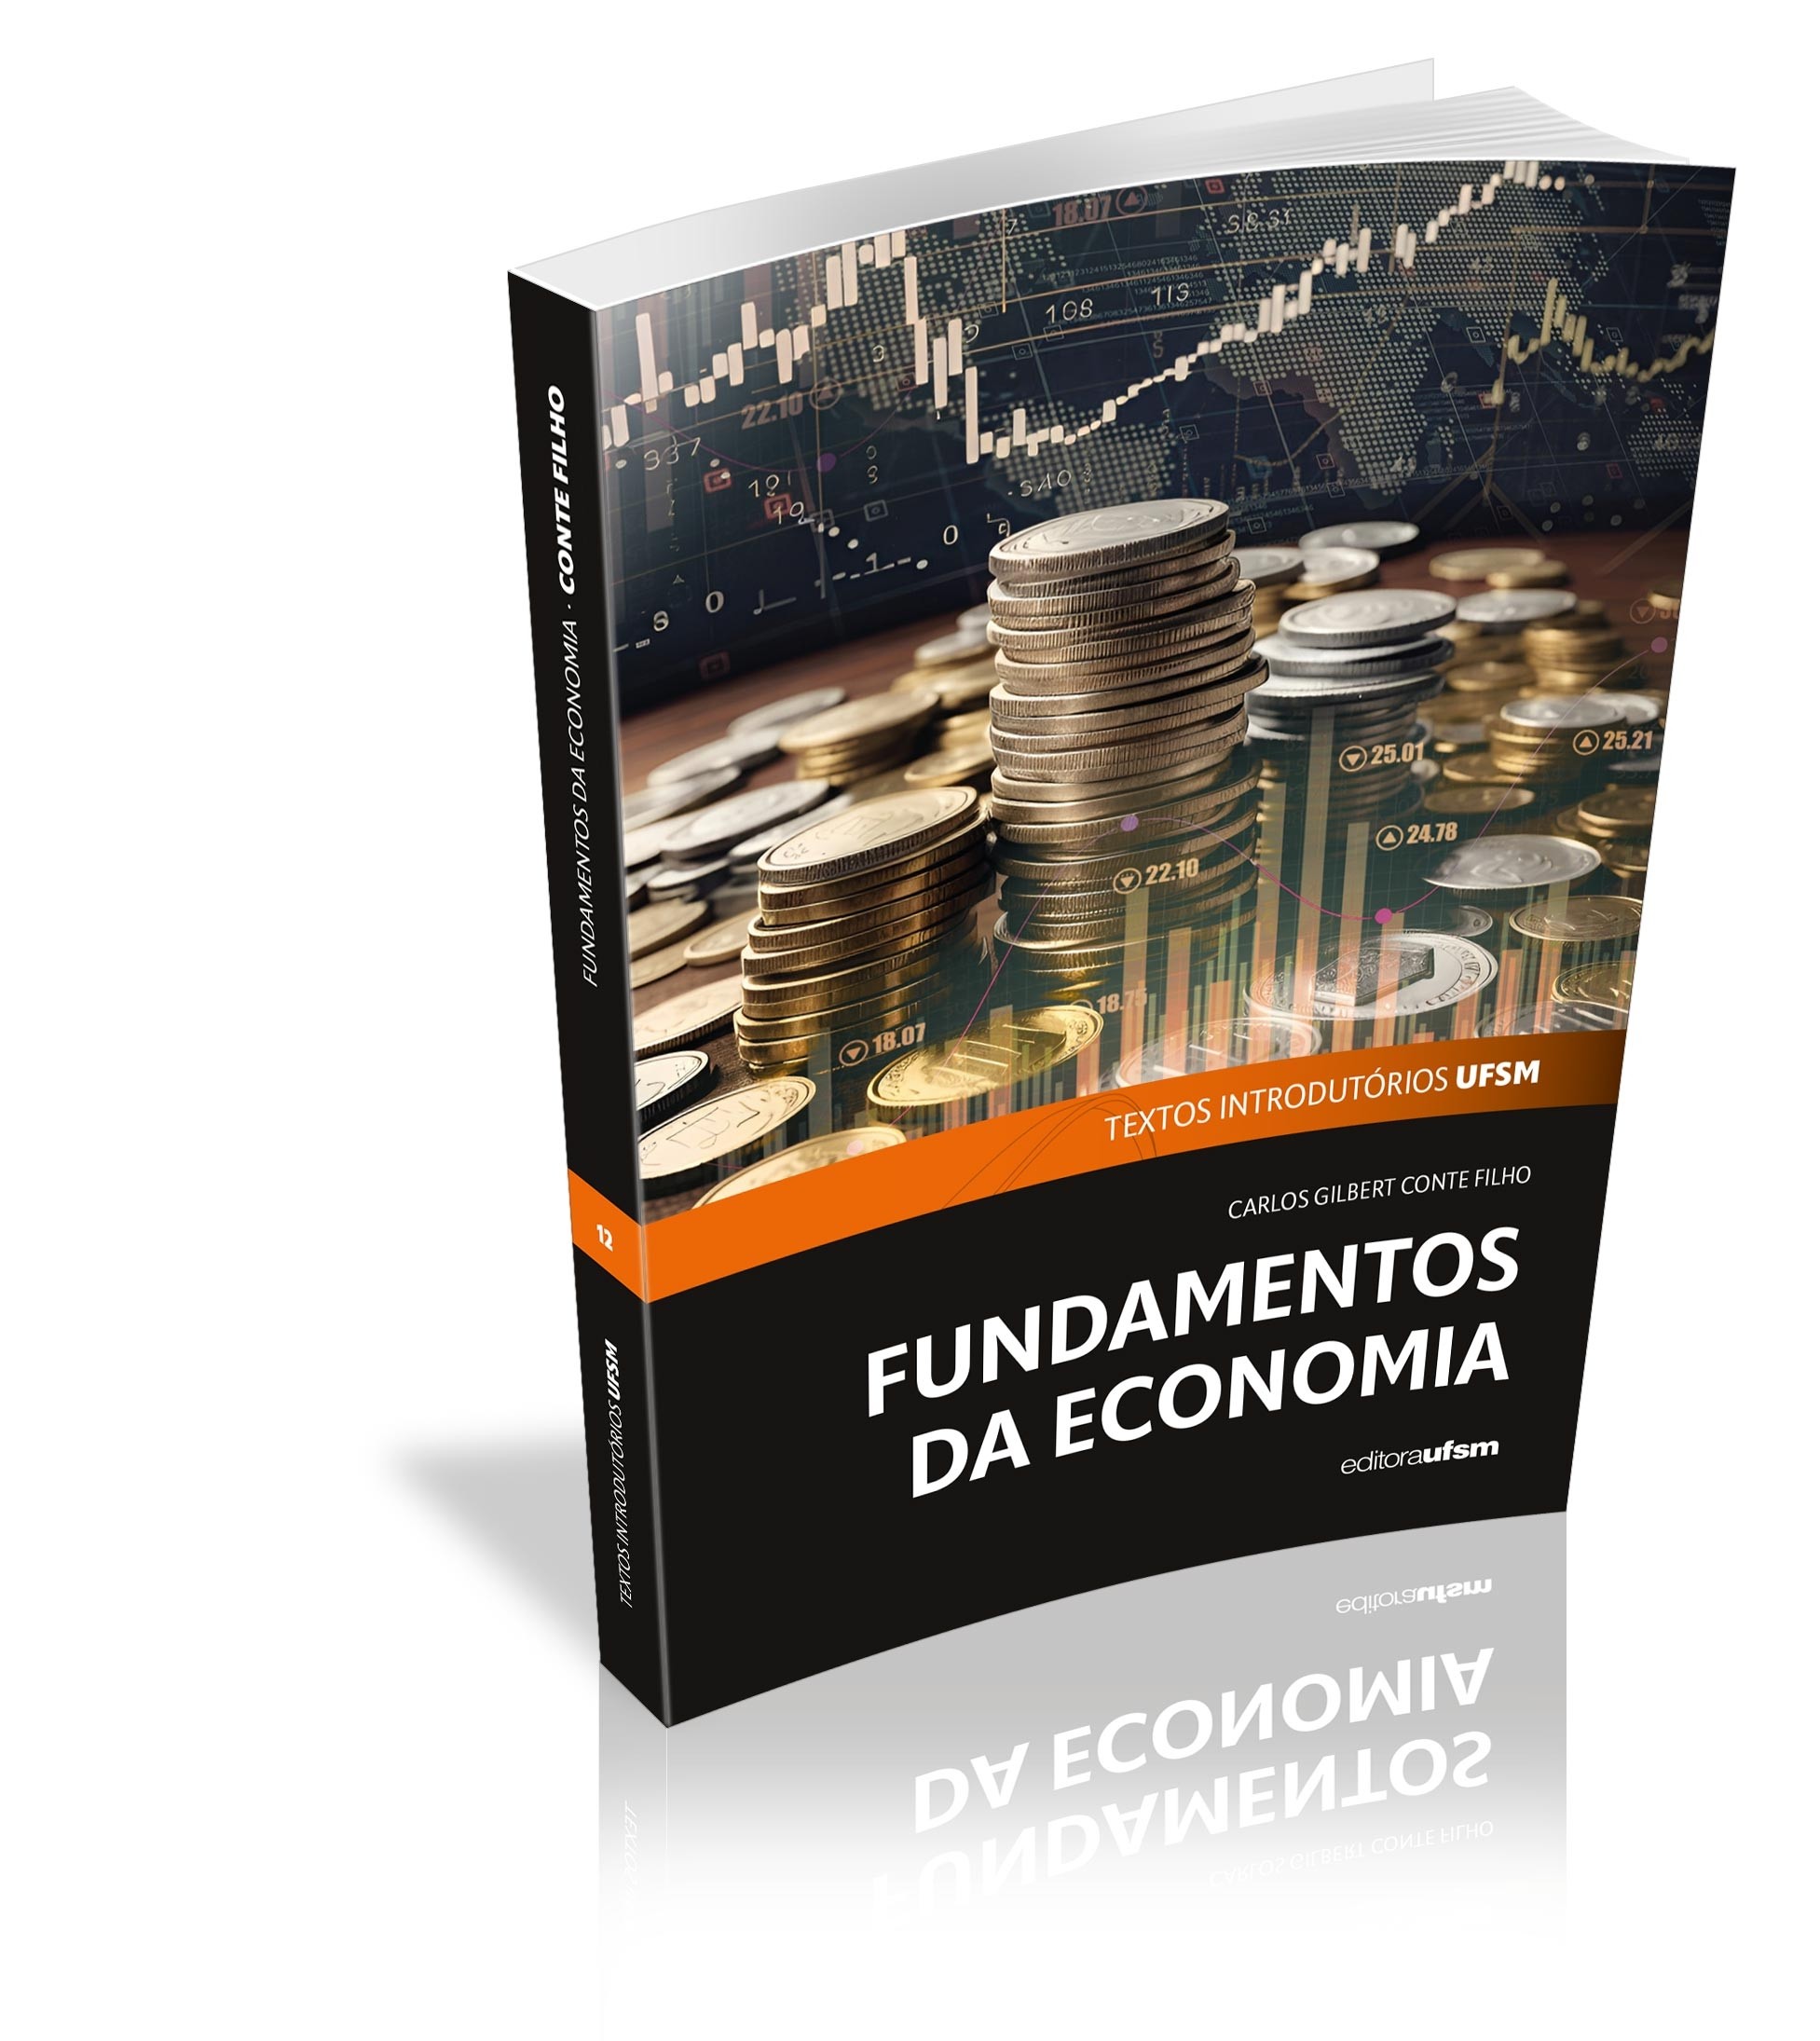 Capa do livro Fundamentos da Economia